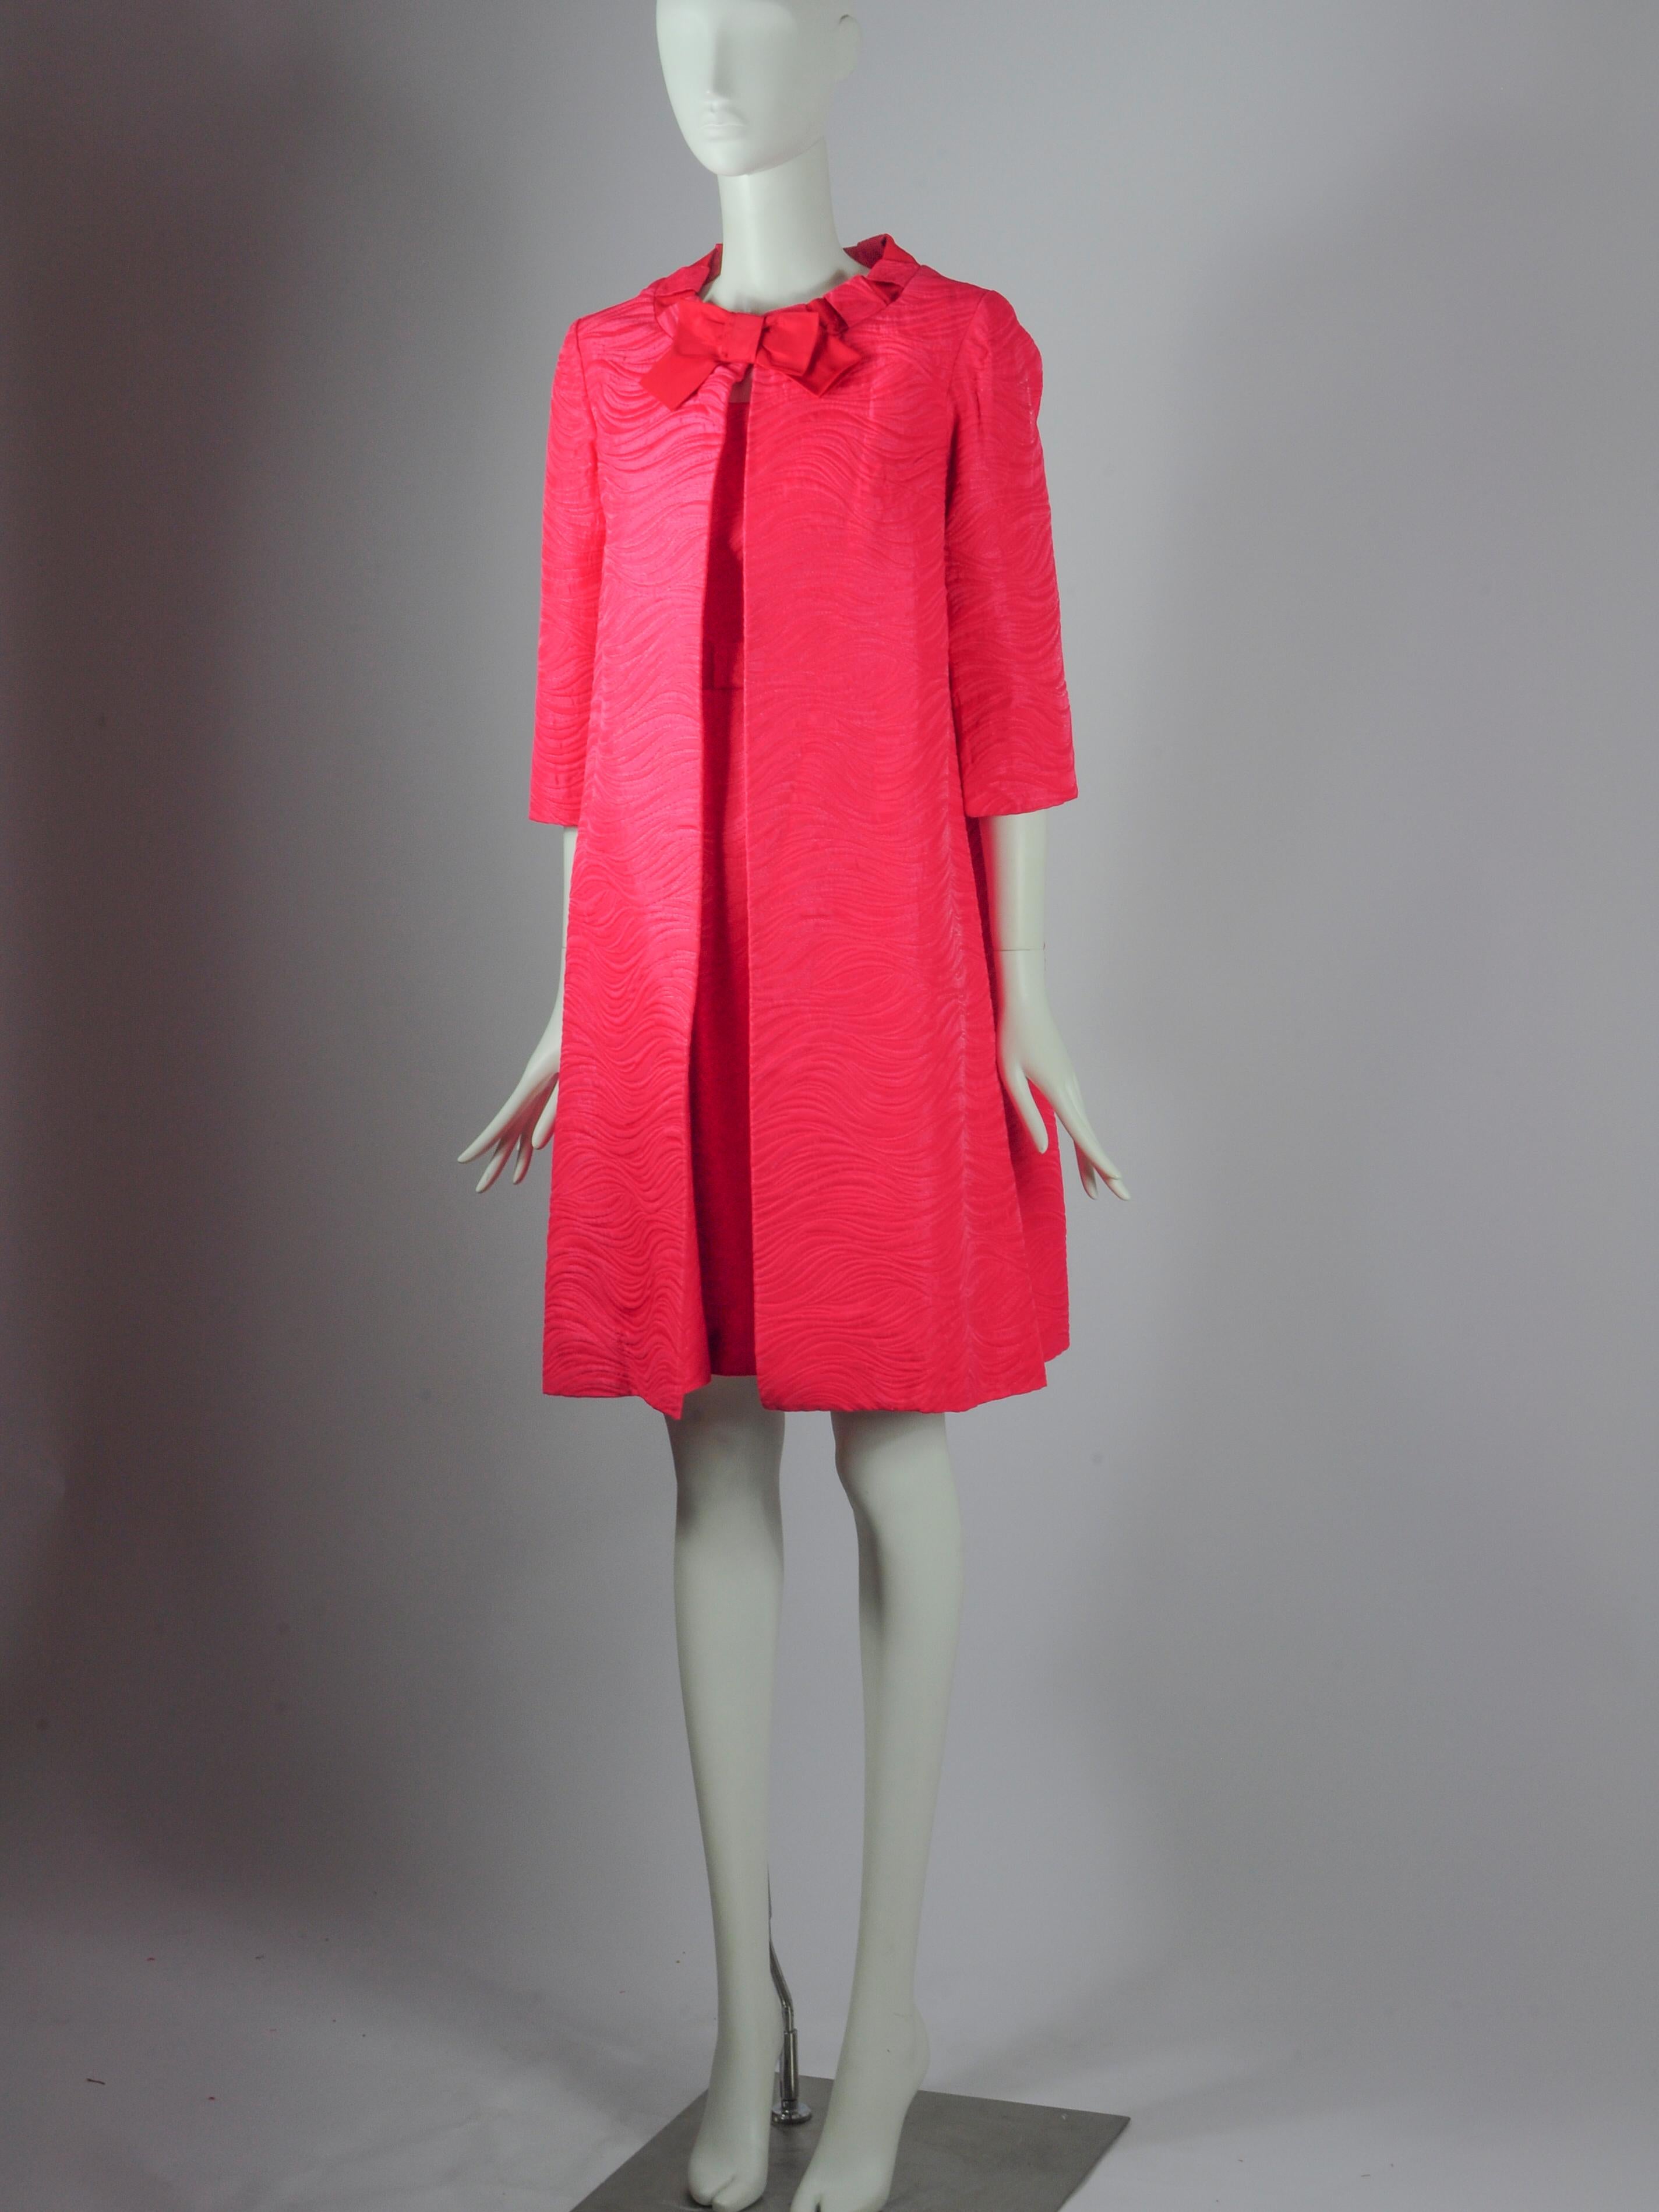 Vintage Jean Allen London zweiteiliges Set bestehend aus einer Jacke und einem ärmellosen Kleid in fuchsia-rosa mit Schleifendetails. Der Stoff ist ein wunderschönes strukturiertes Gewebe mit einem Wellenmuster und einem leicht eingewebten